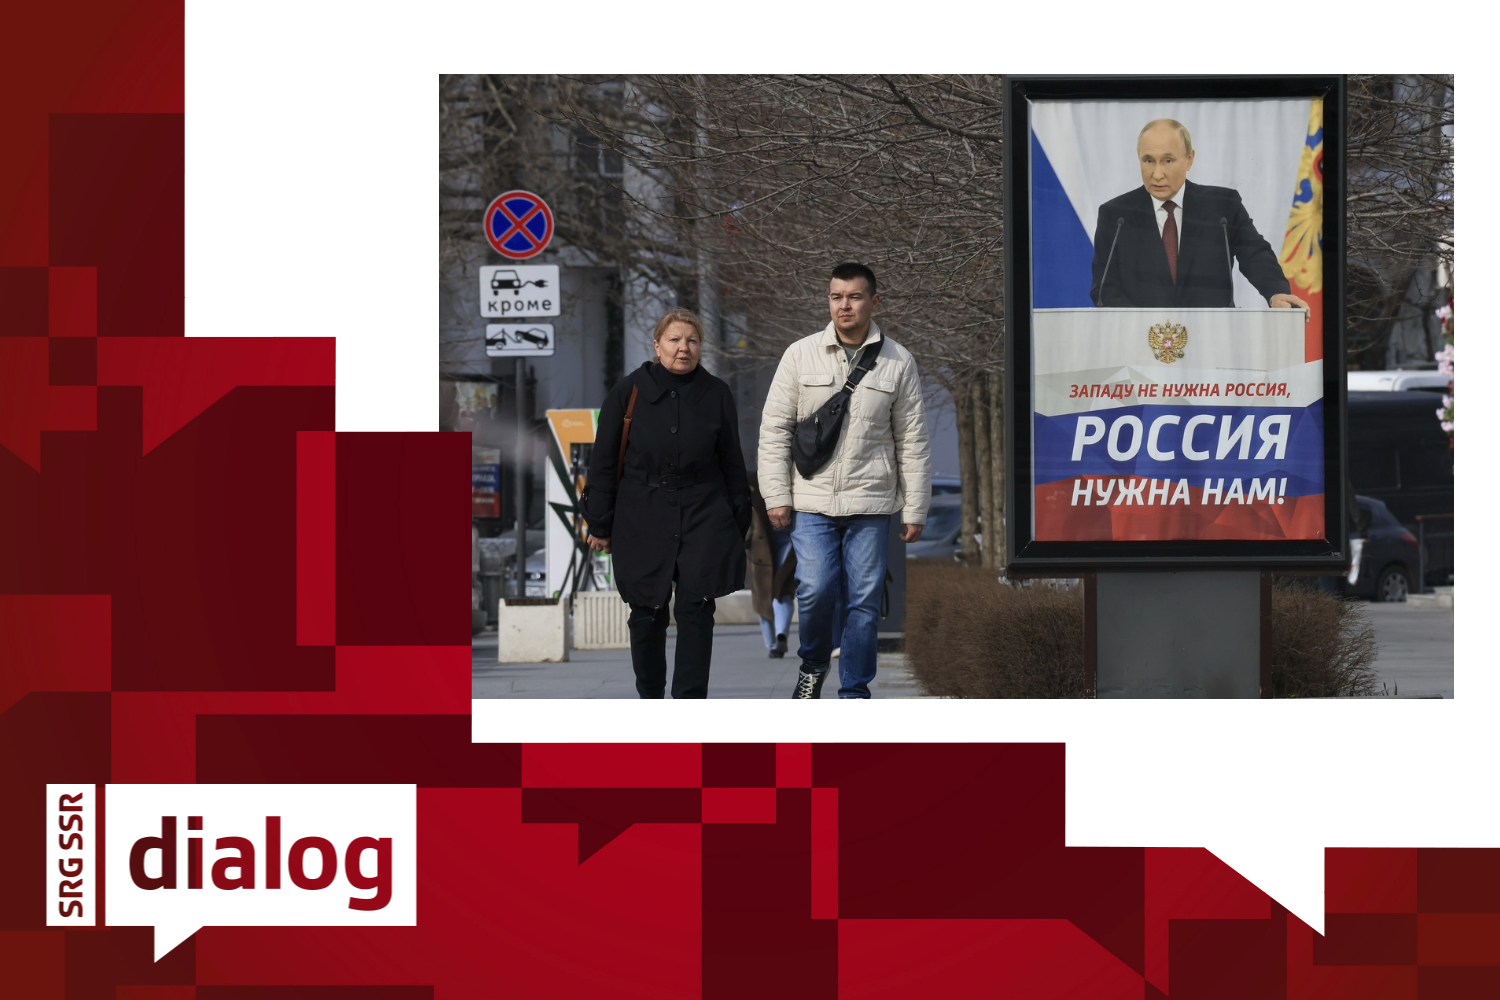 Ein Plakat mit einem Bild des russischen Präsidenten Wladimir Putin und der Aufschrift "Der Westen braucht Russland nicht, wir brauchen Russland" in einer Strasse in Sewastopol, Krim.